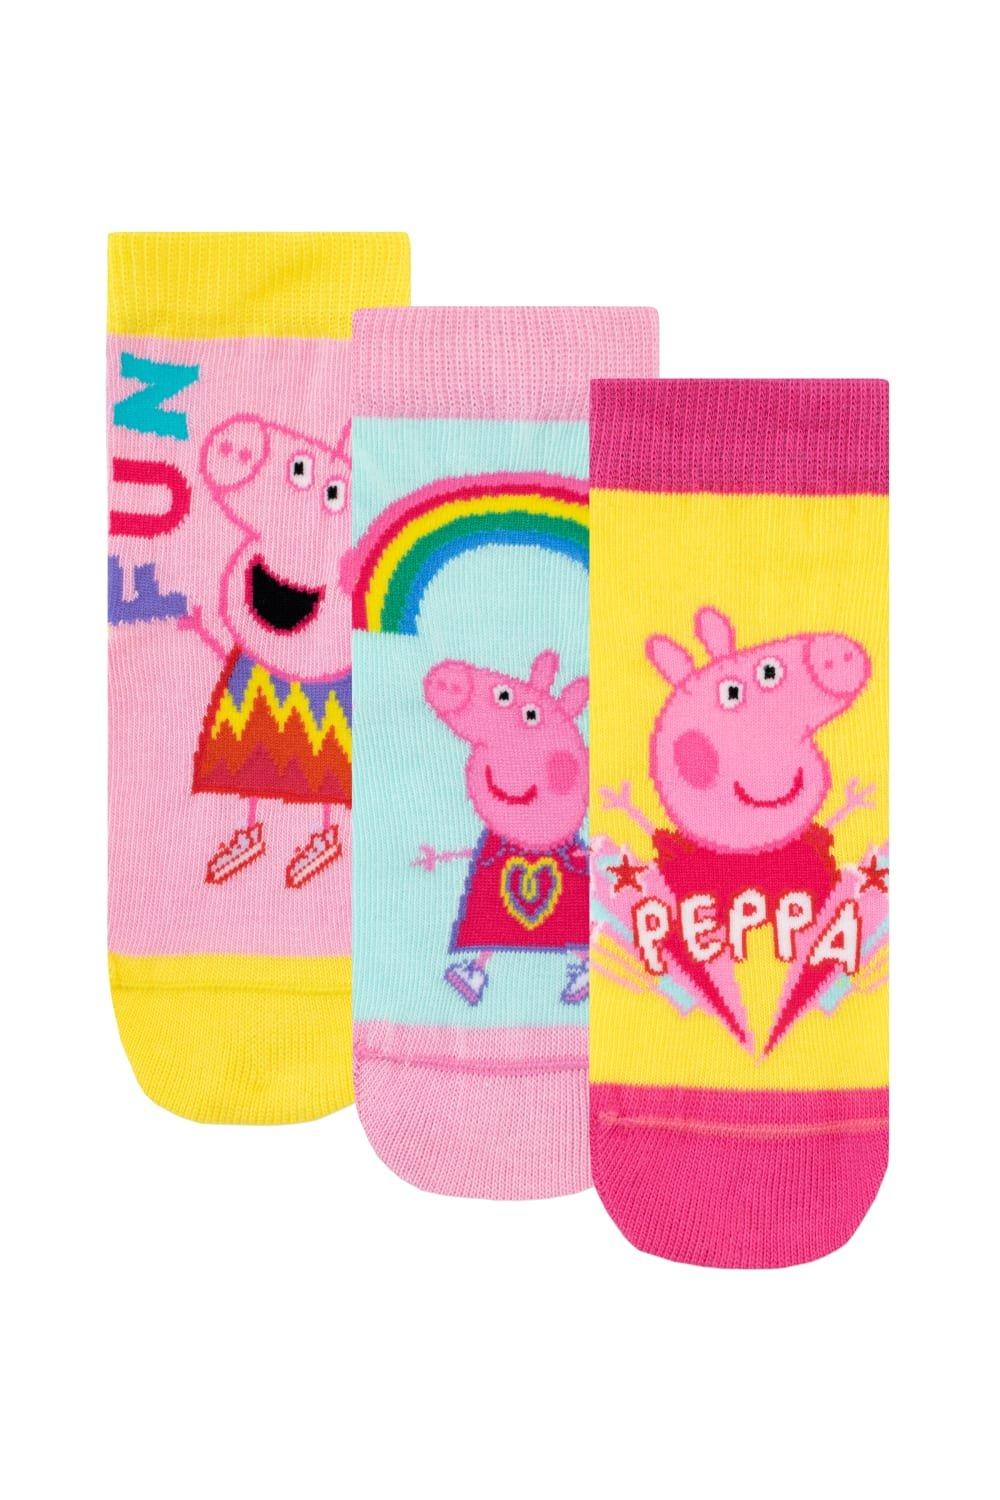 Набор носков Rainbow Fun, 3 шт. Peppa Pig, розовый набор подарочный 6в1 свинка пеппа давай играть